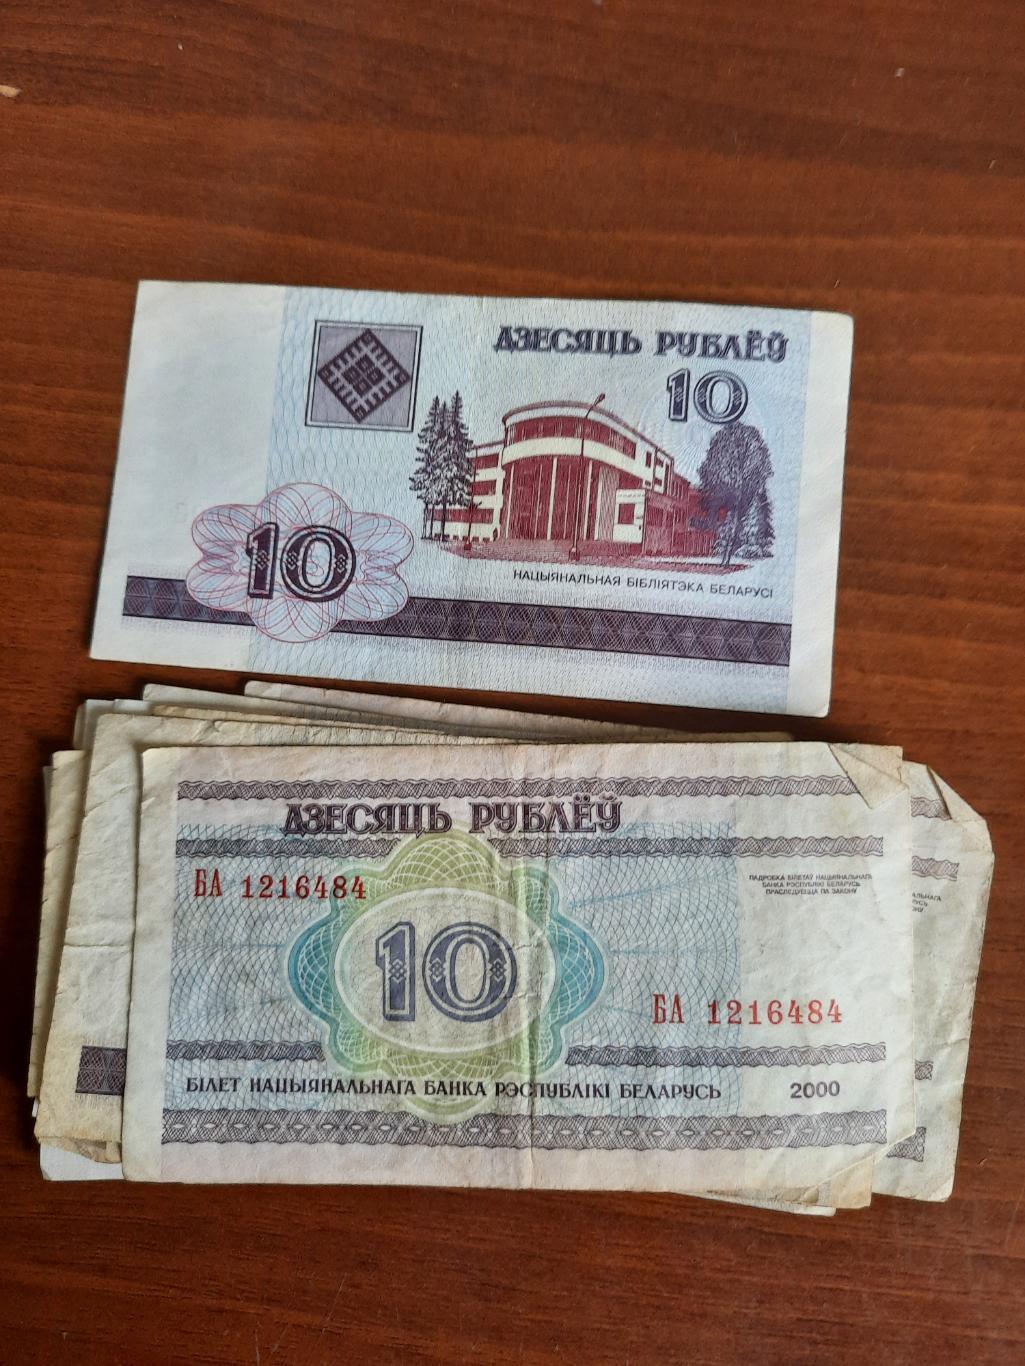 Беларусь. 10 рублей 2000 год (одна купюра) серия бг